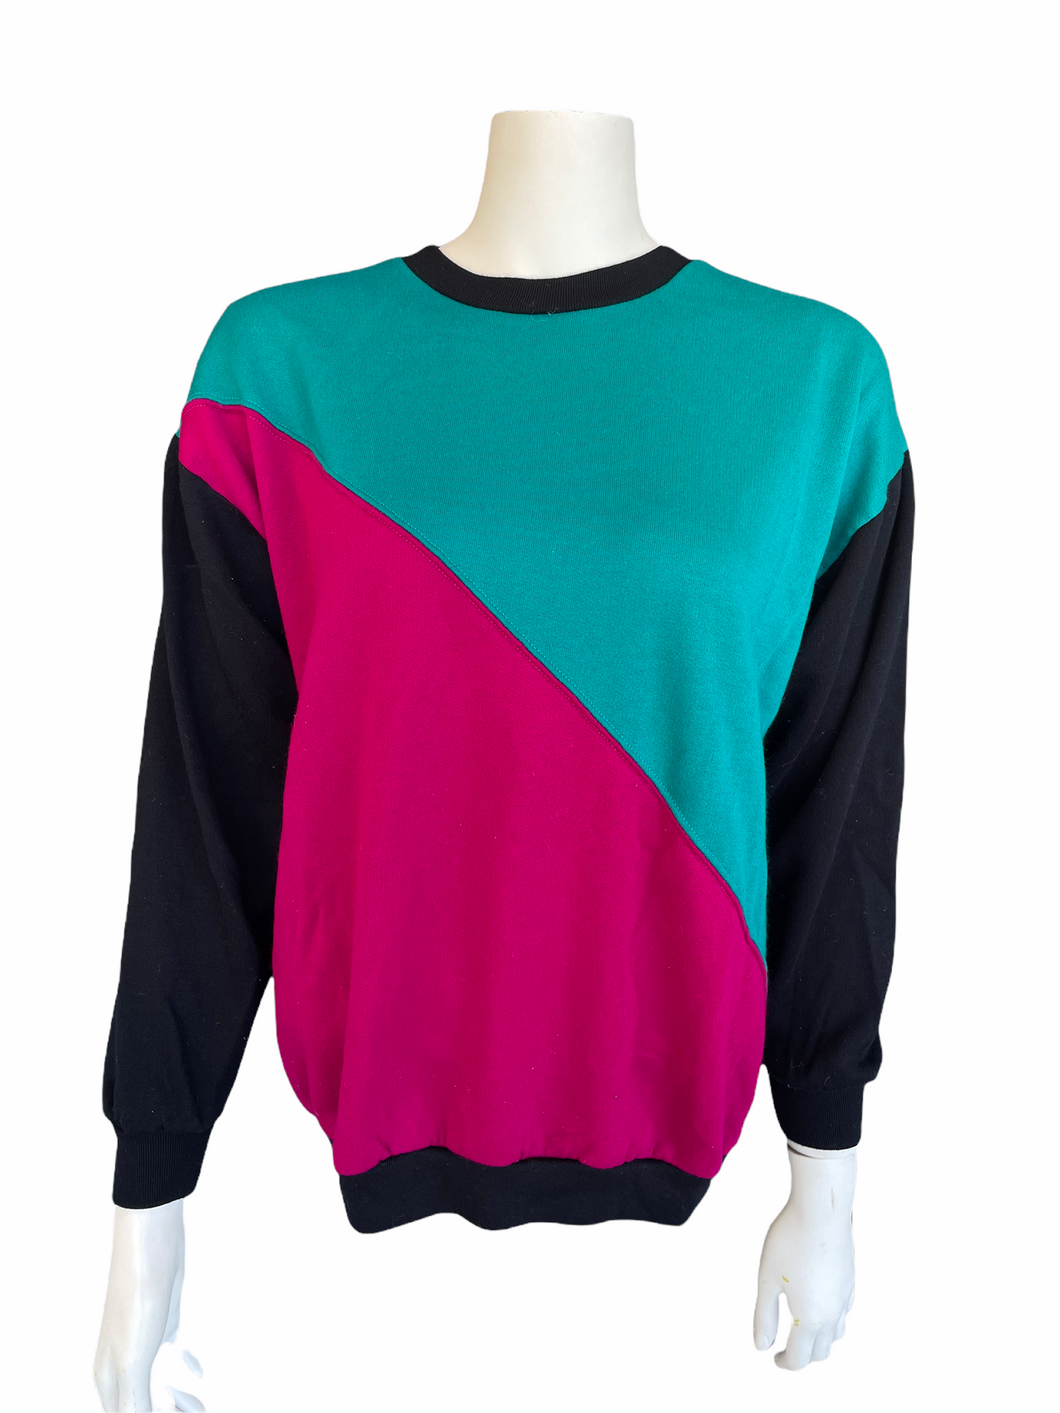 Vintage Colorblock Crewneck Sweater | Size: Medium